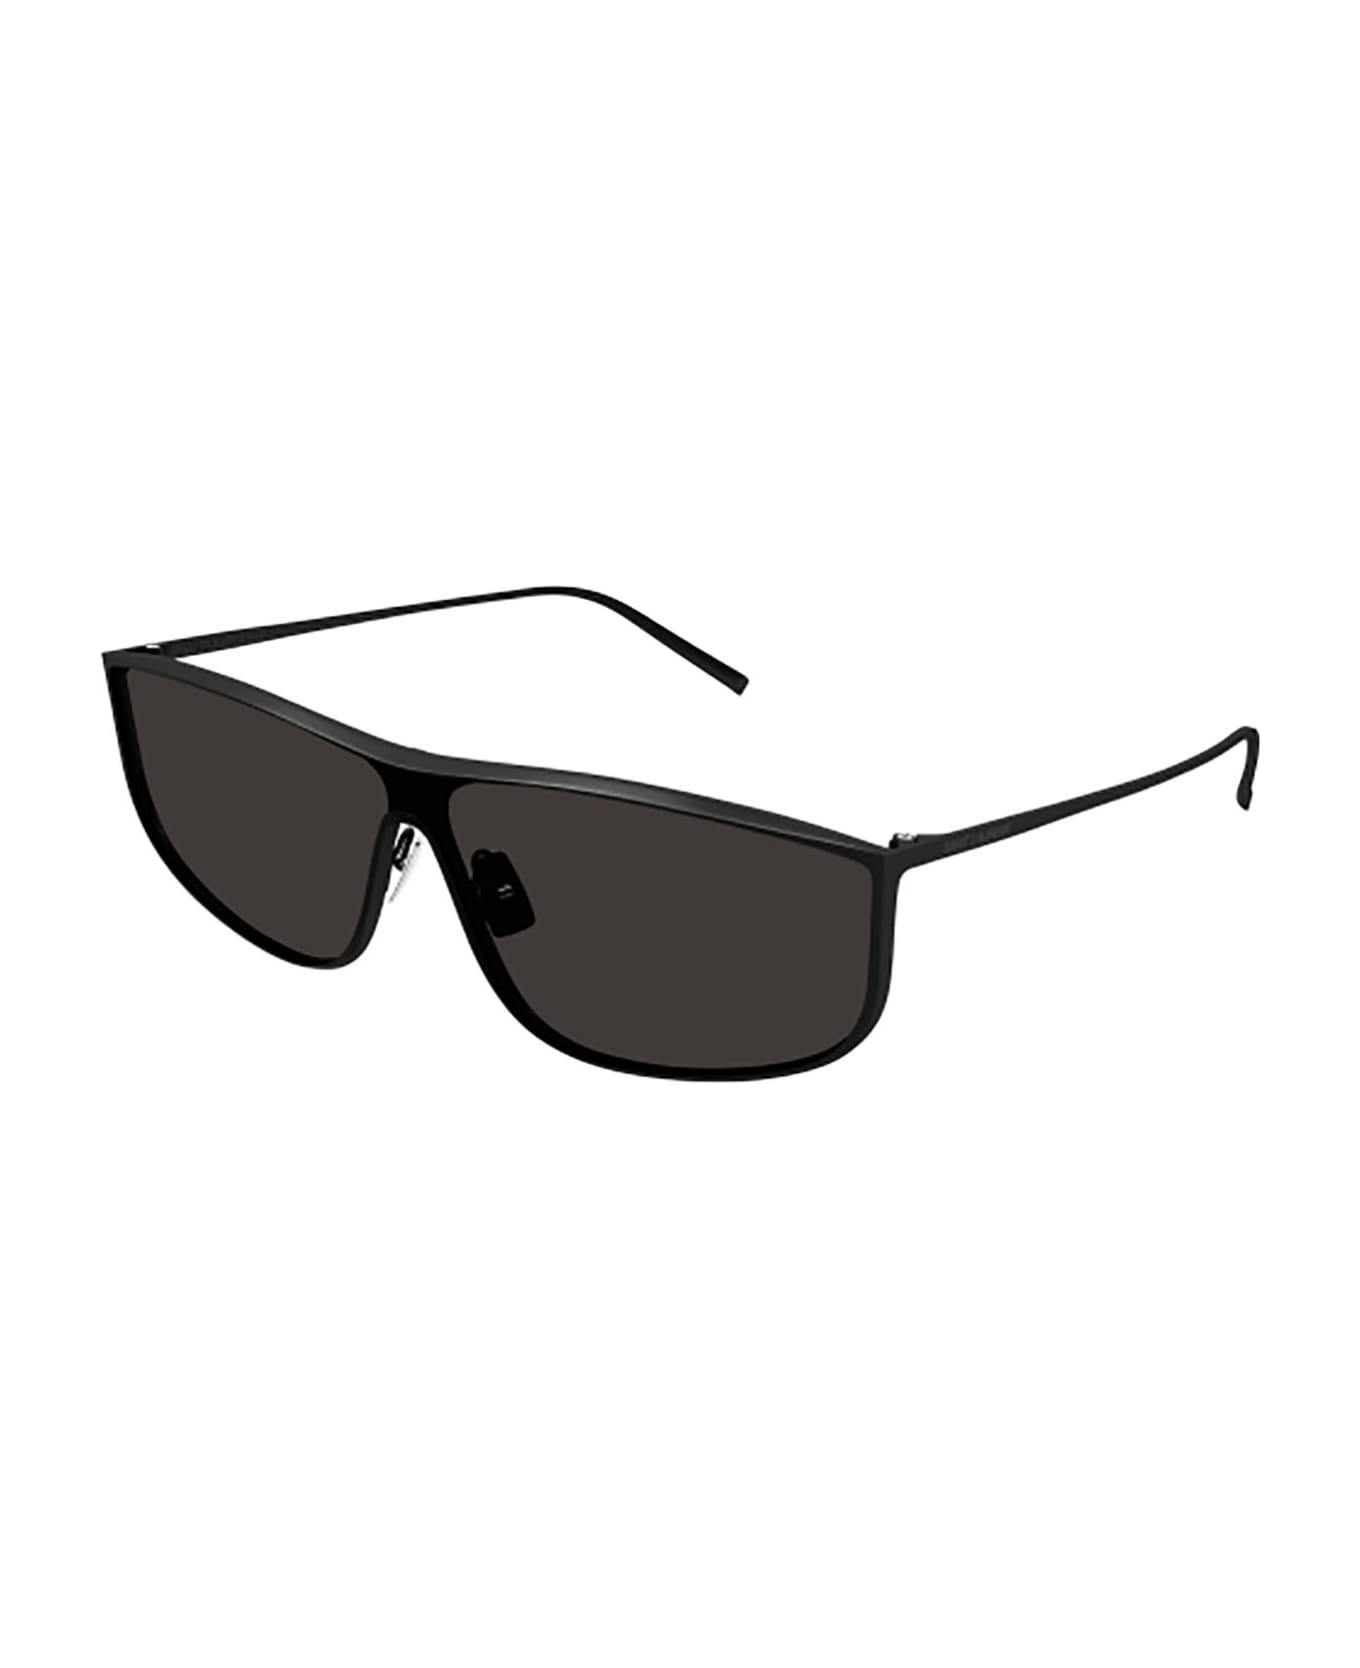 Saint Laurent Eyewear SL 605 LUNA Sunglasses - Black Black Black